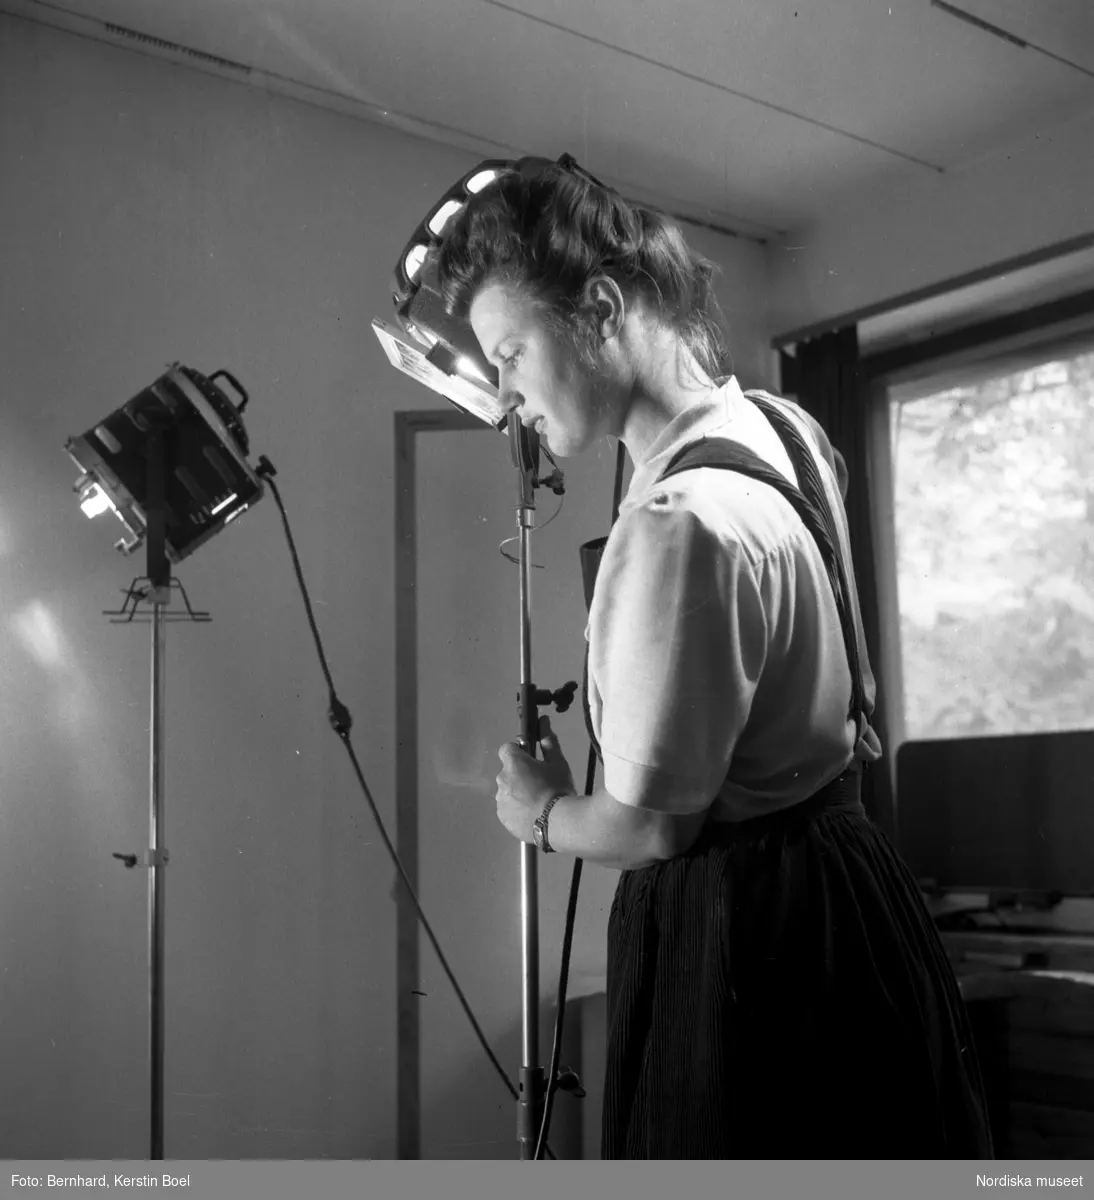 Fotografen Kerstin Bernhard riktar en lampa i sin ateljé, ca 1945. Självporträtt.